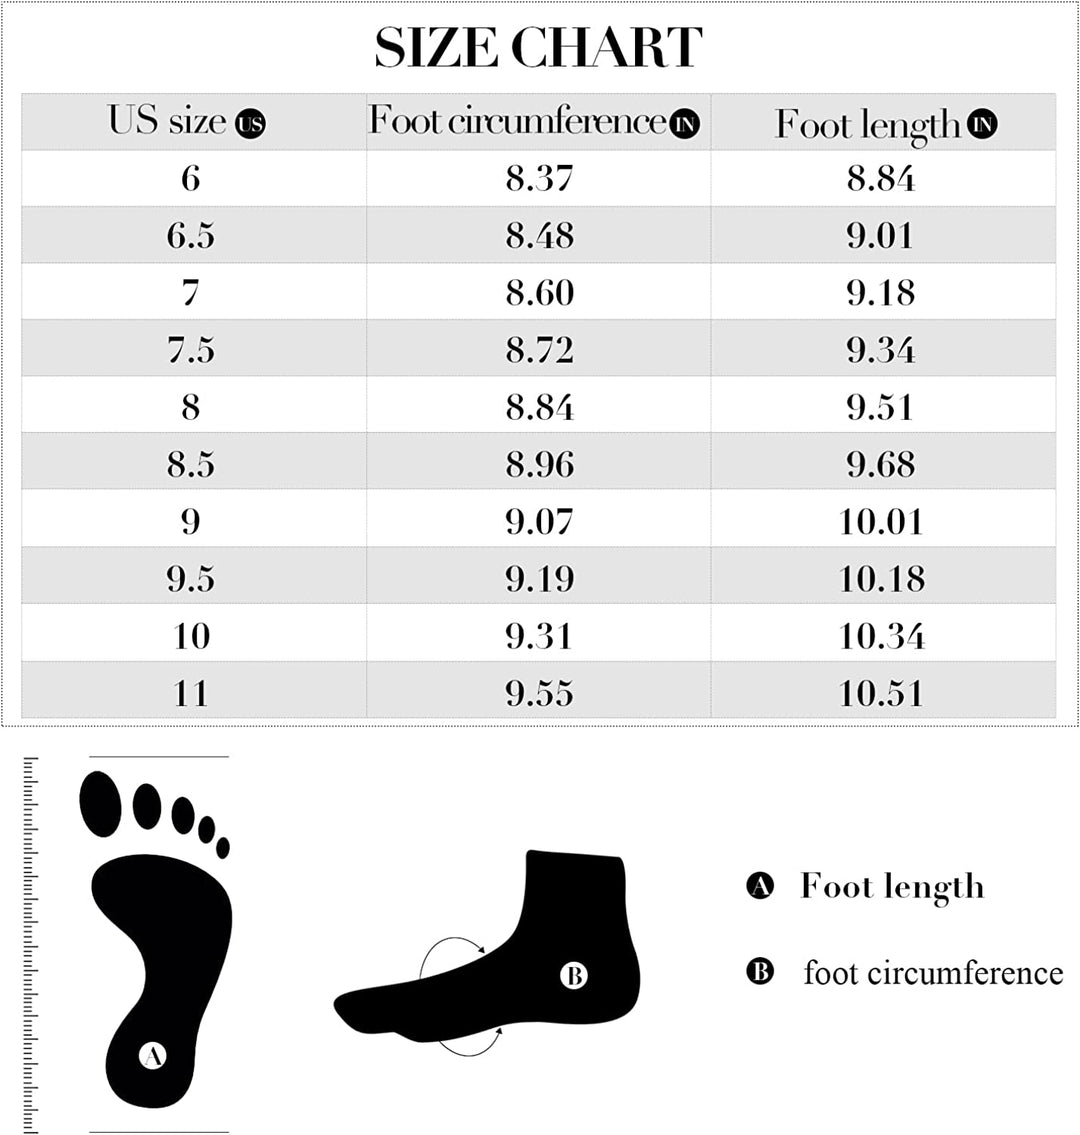 Glitter 3.5 Inch Block Heel Sandals - MYSOFT